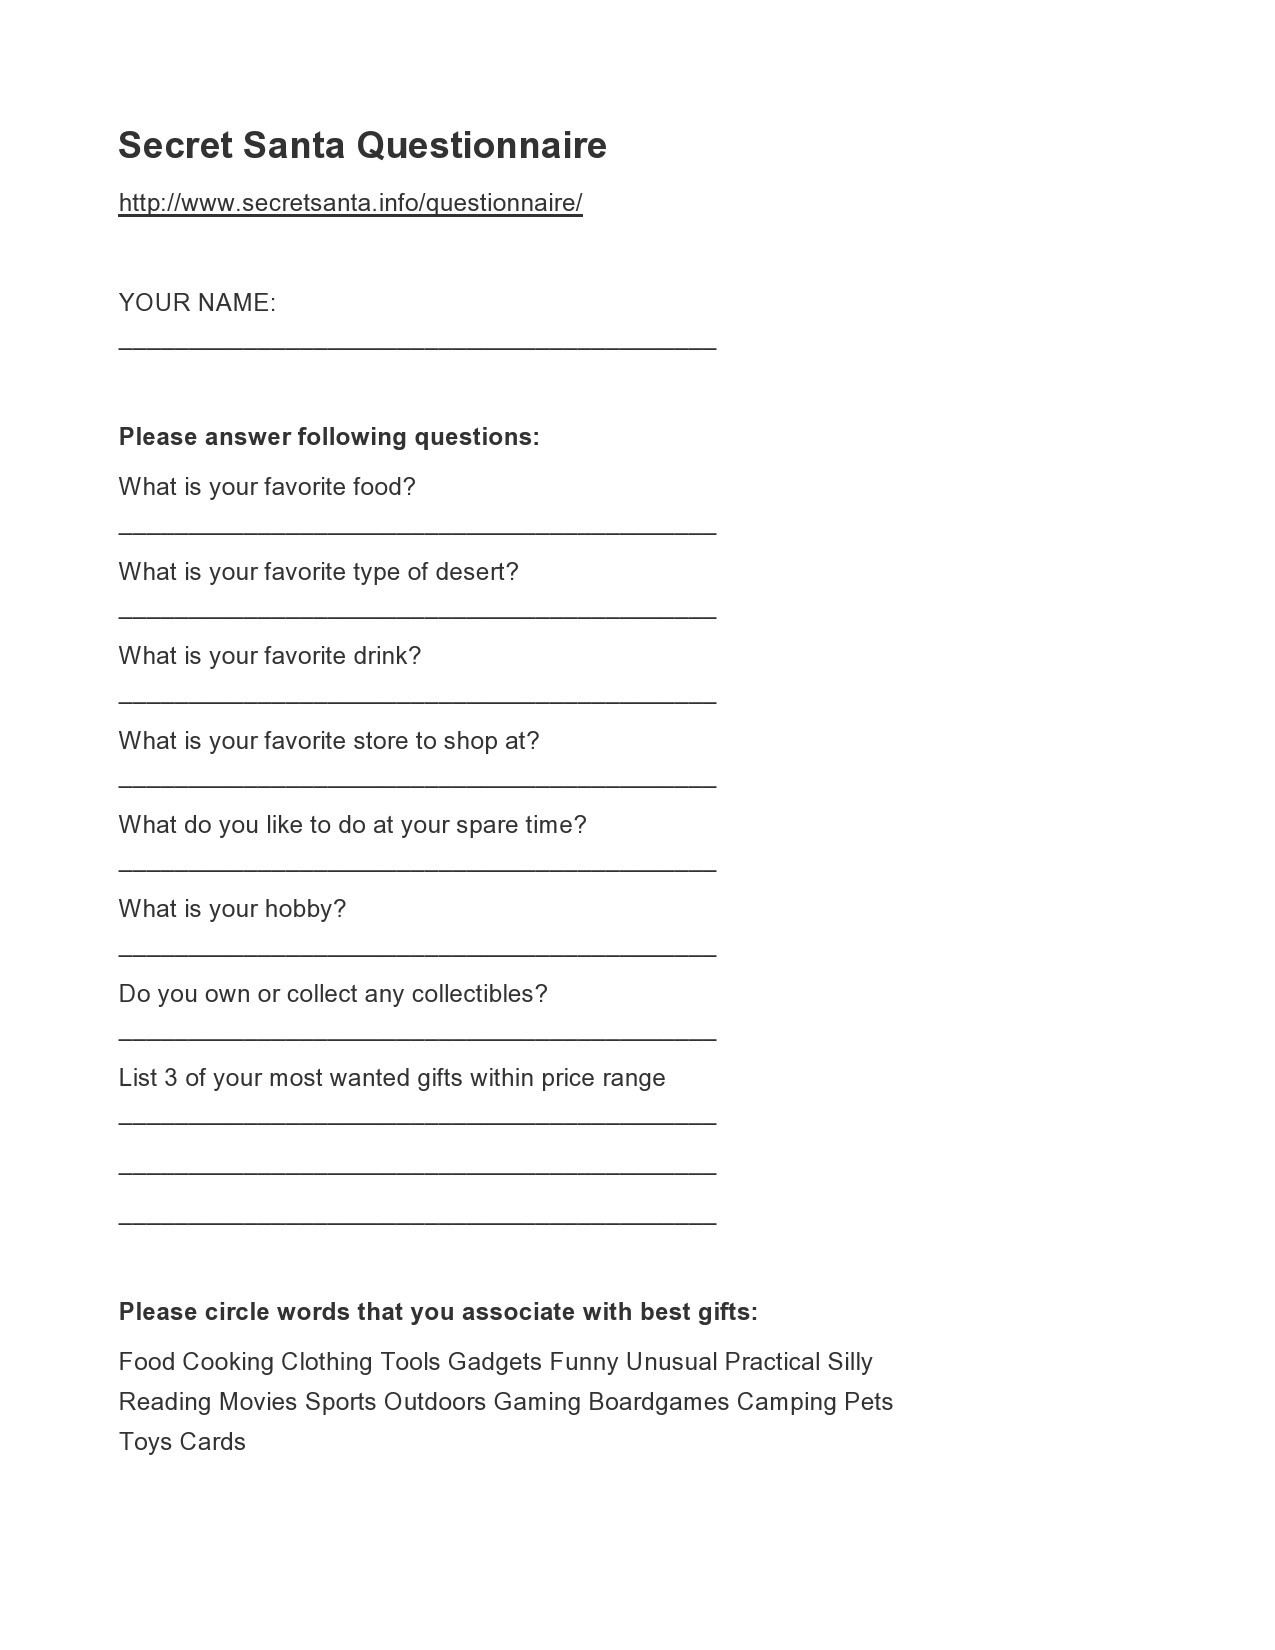 printable-secret-santa-questionnaire-customize-and-print